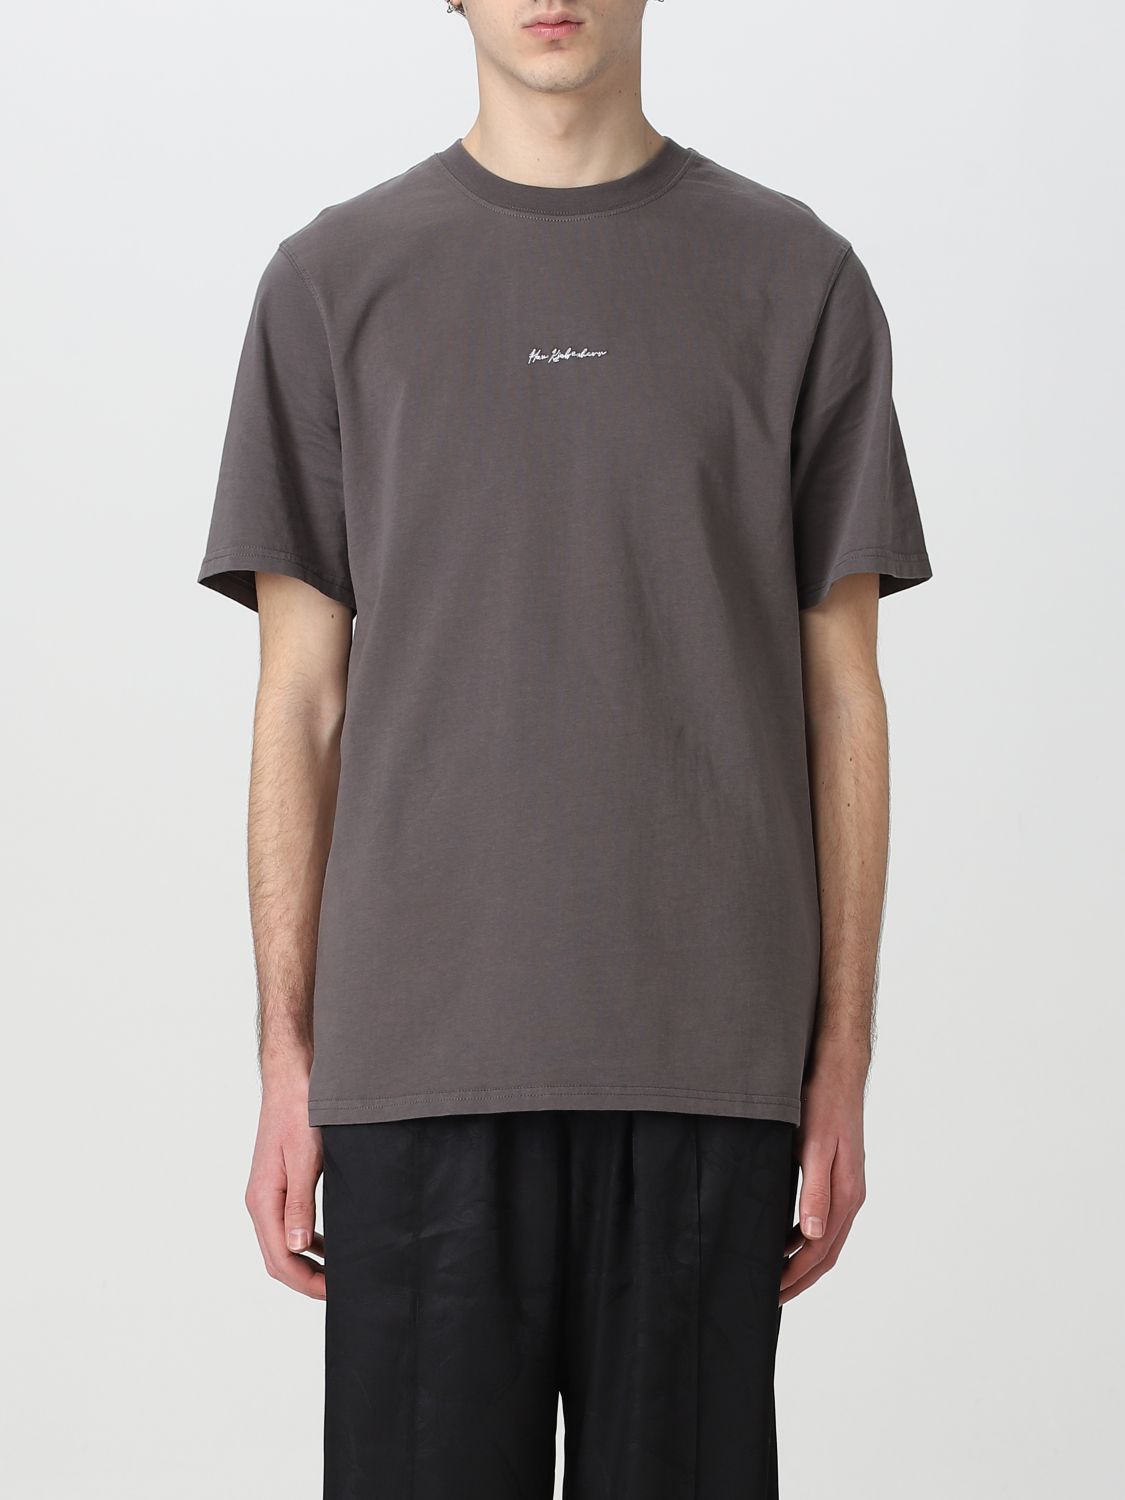 Han Kjobenhavn T-shirt Kjøbenhavn Men In Grey | ModeSens